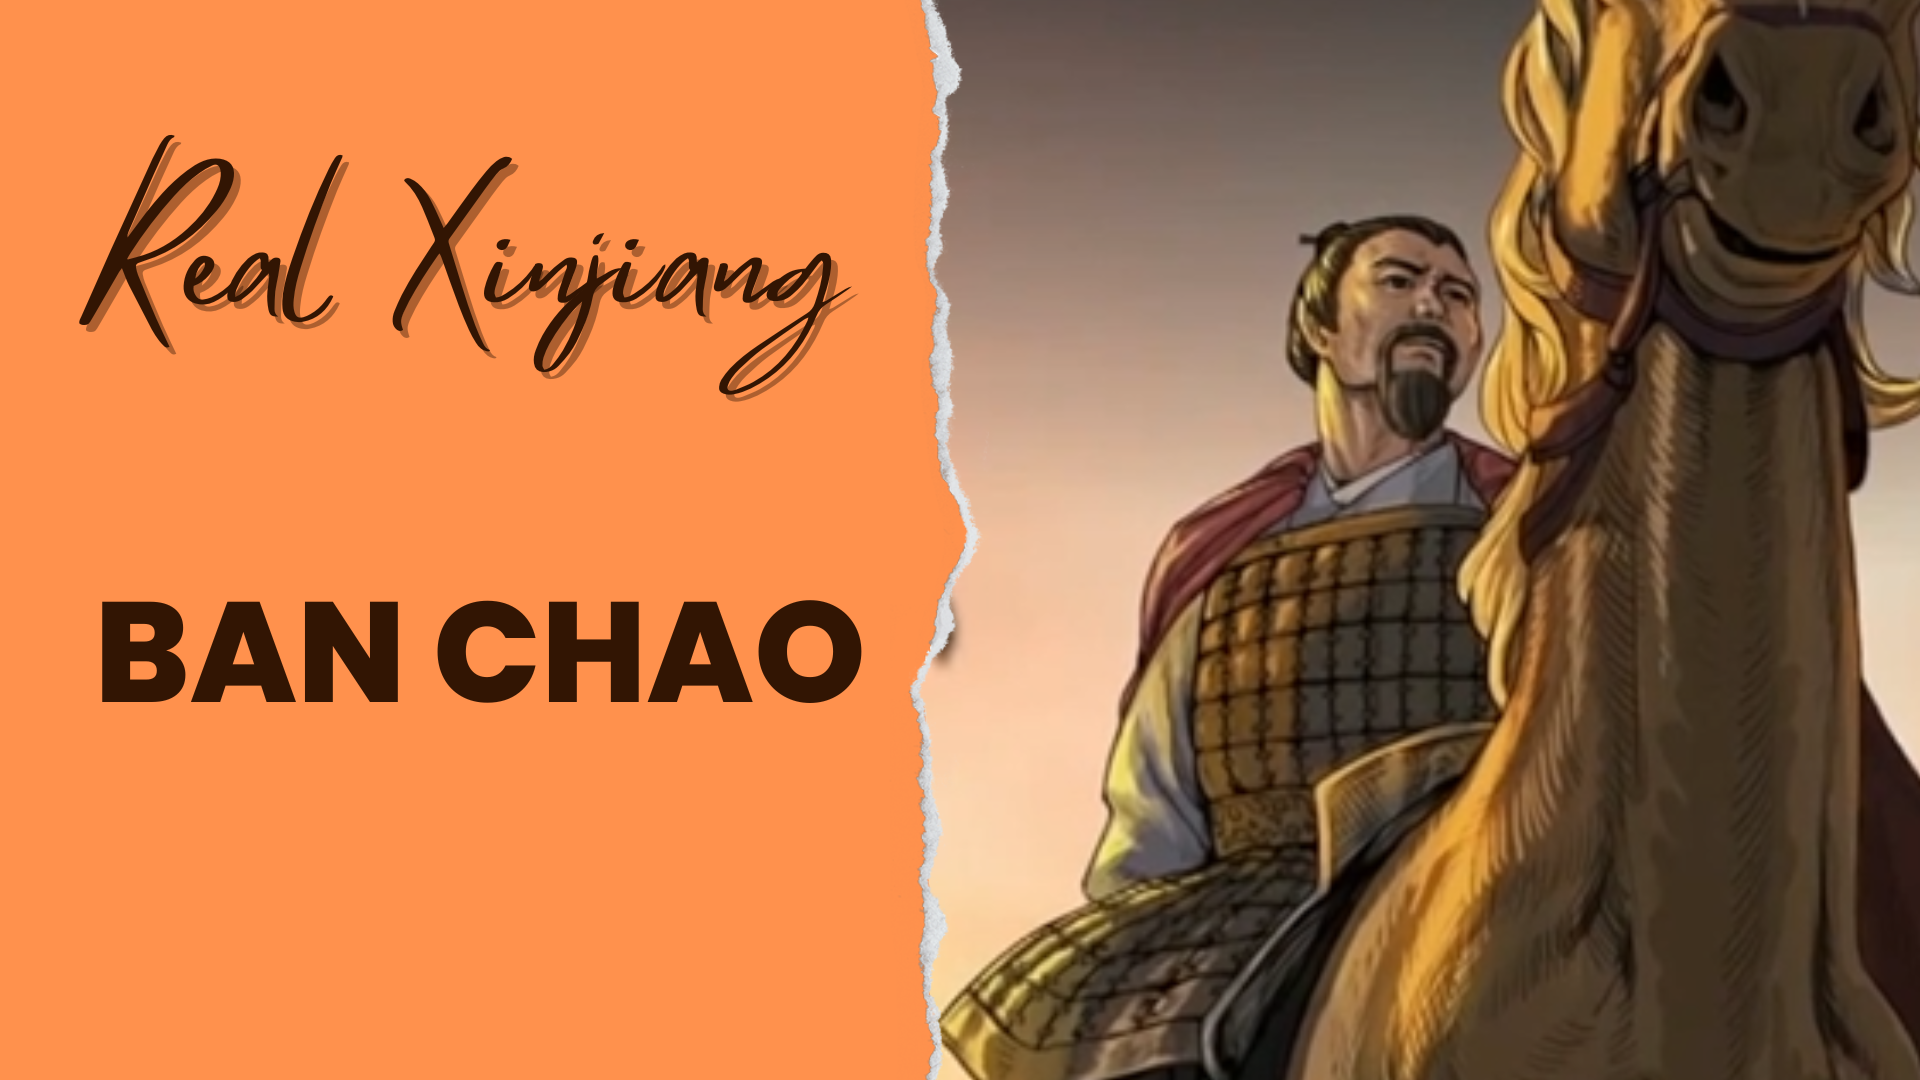 Real Xinjiang: Ban Chao